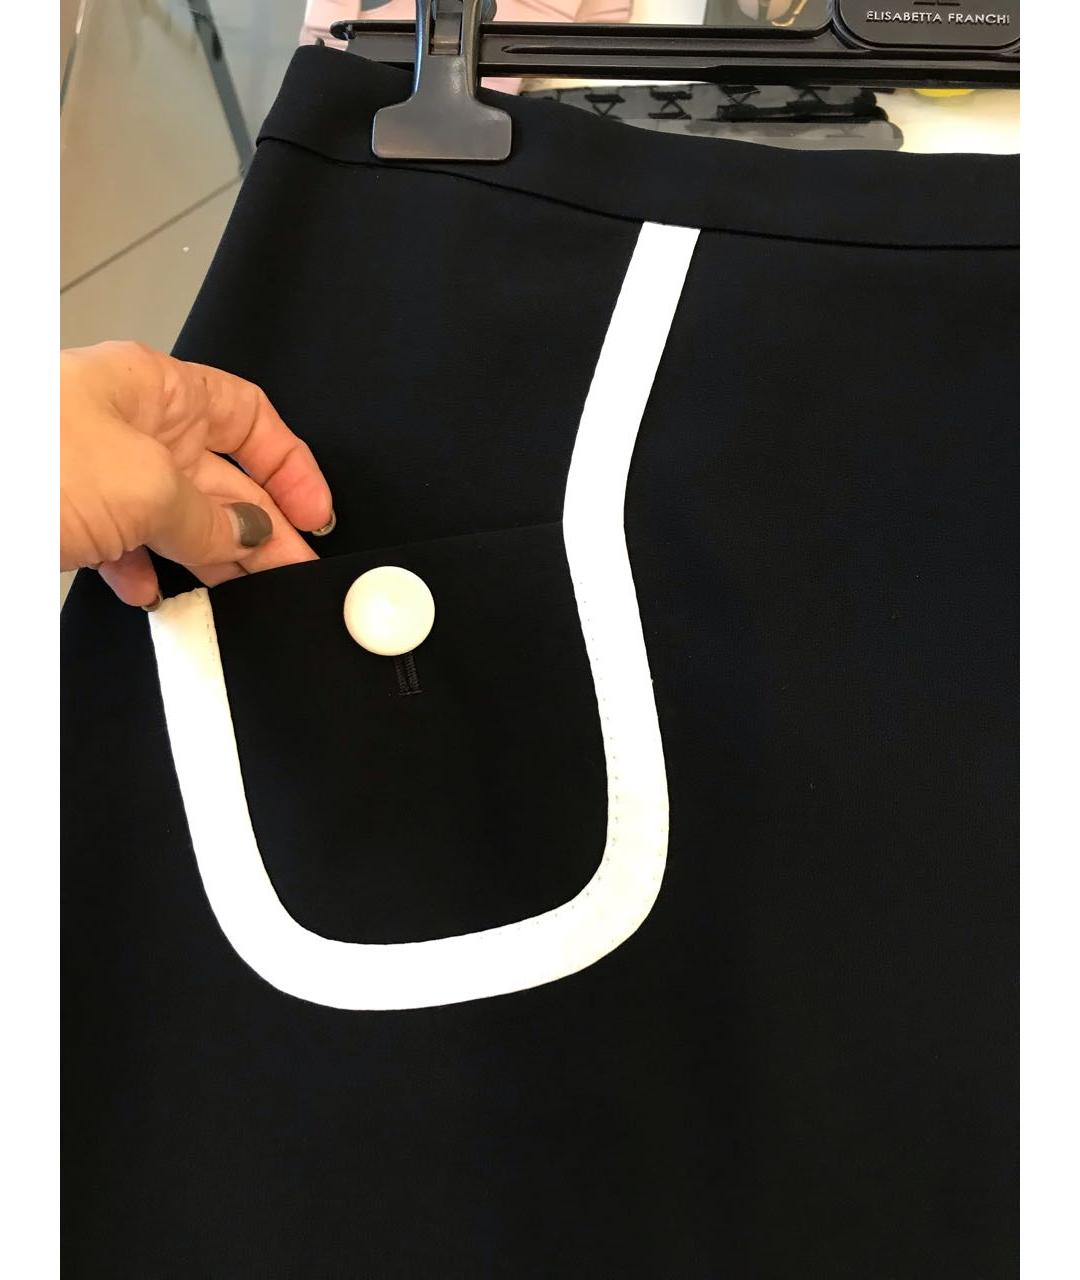 MOSCHINO Черная полиэстеровая юбка мини, фото 2